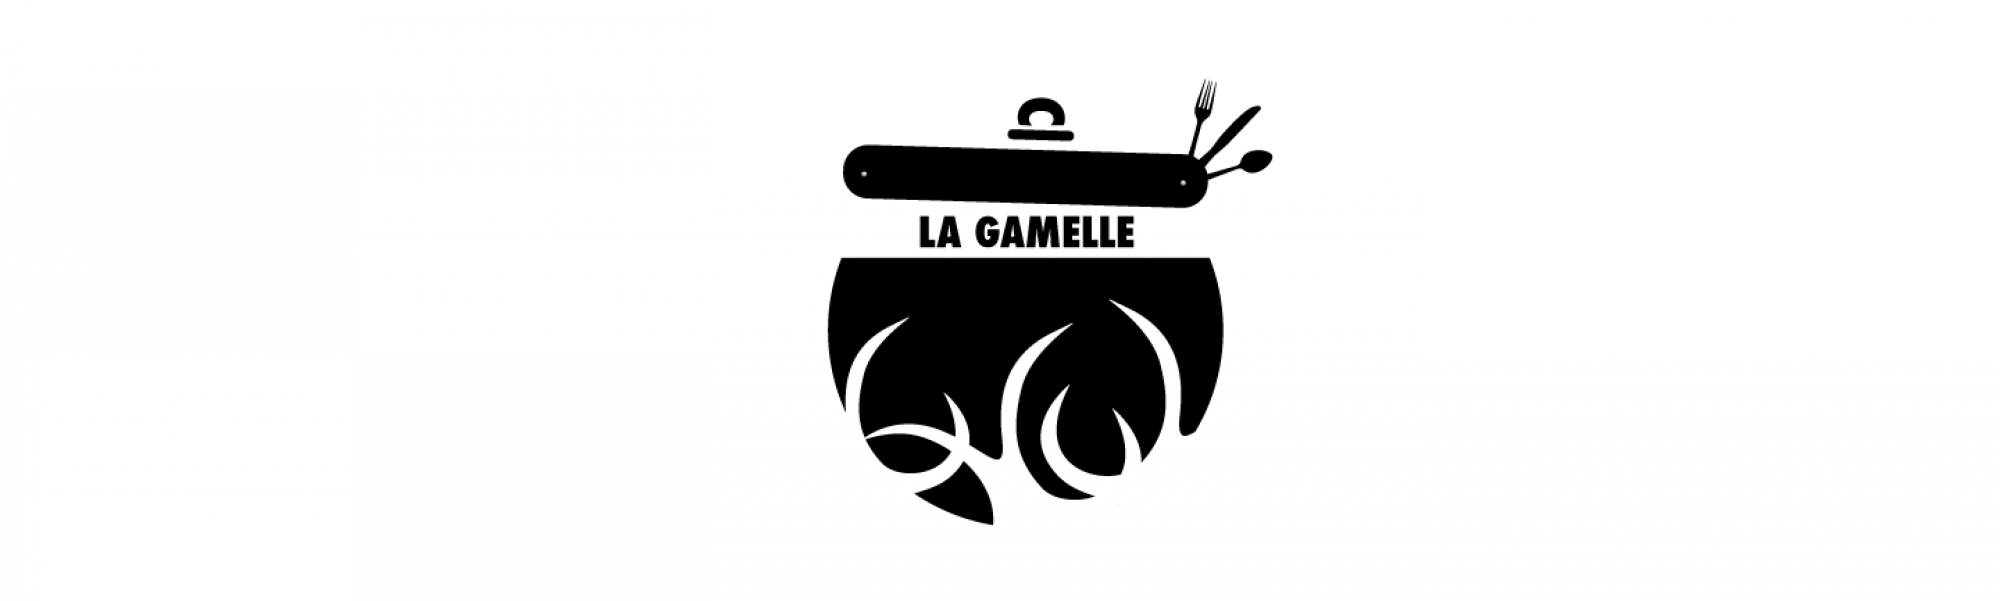 La Gamelle | Cuisine | Simple . Créative . Distinctive.